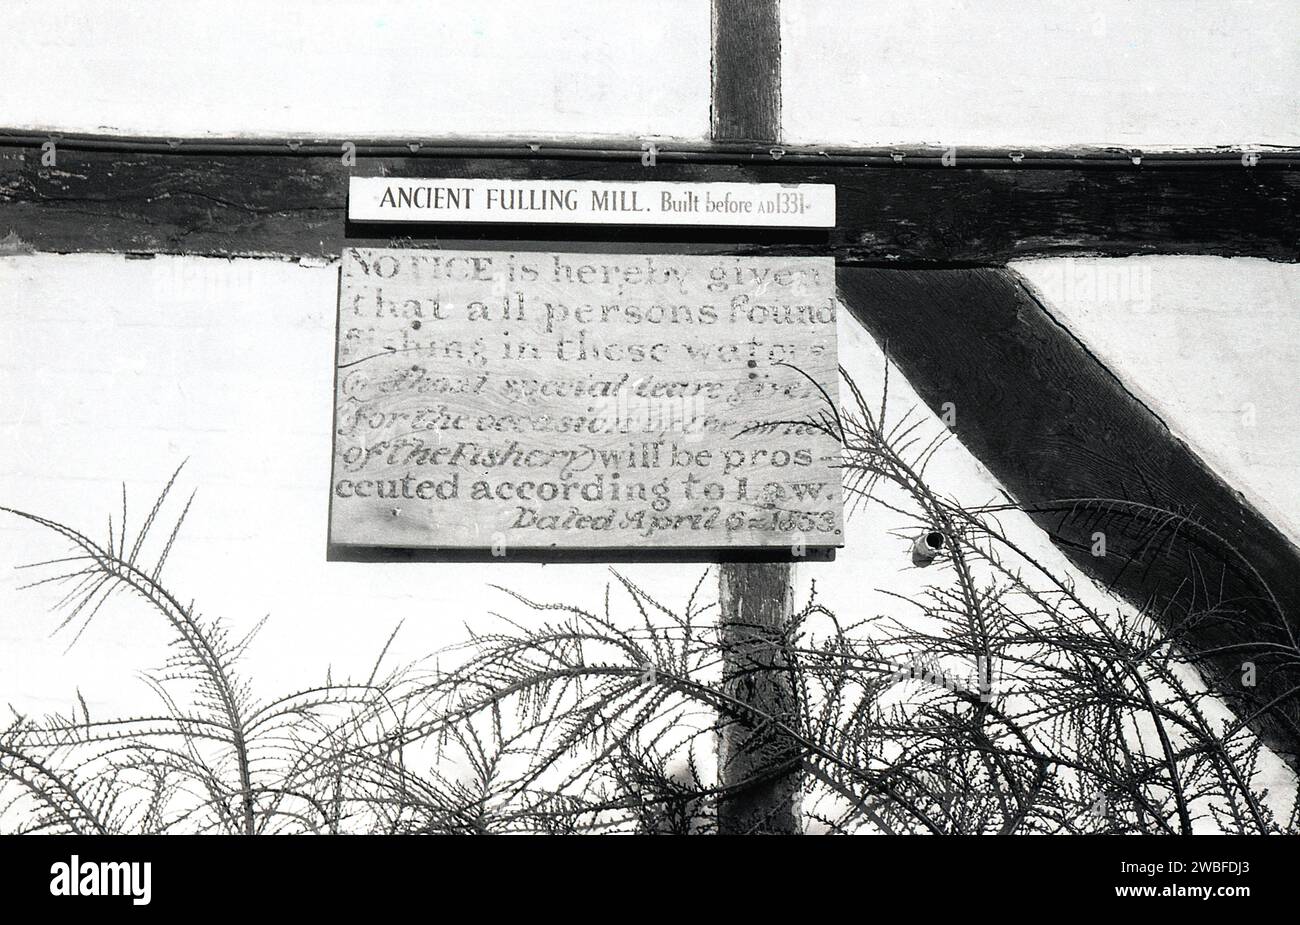 1960, storico, scritto su un vecchio edificio con struttura in legno di paglia ad Alresford, sopra il fiume Alre sono le parole: Fulling Mill. Costruito prima dell'AD1331..... Sotto questo avviso c'è scritto... Non è consentita la pesca nel fiume....datato 1853. Foto Stock